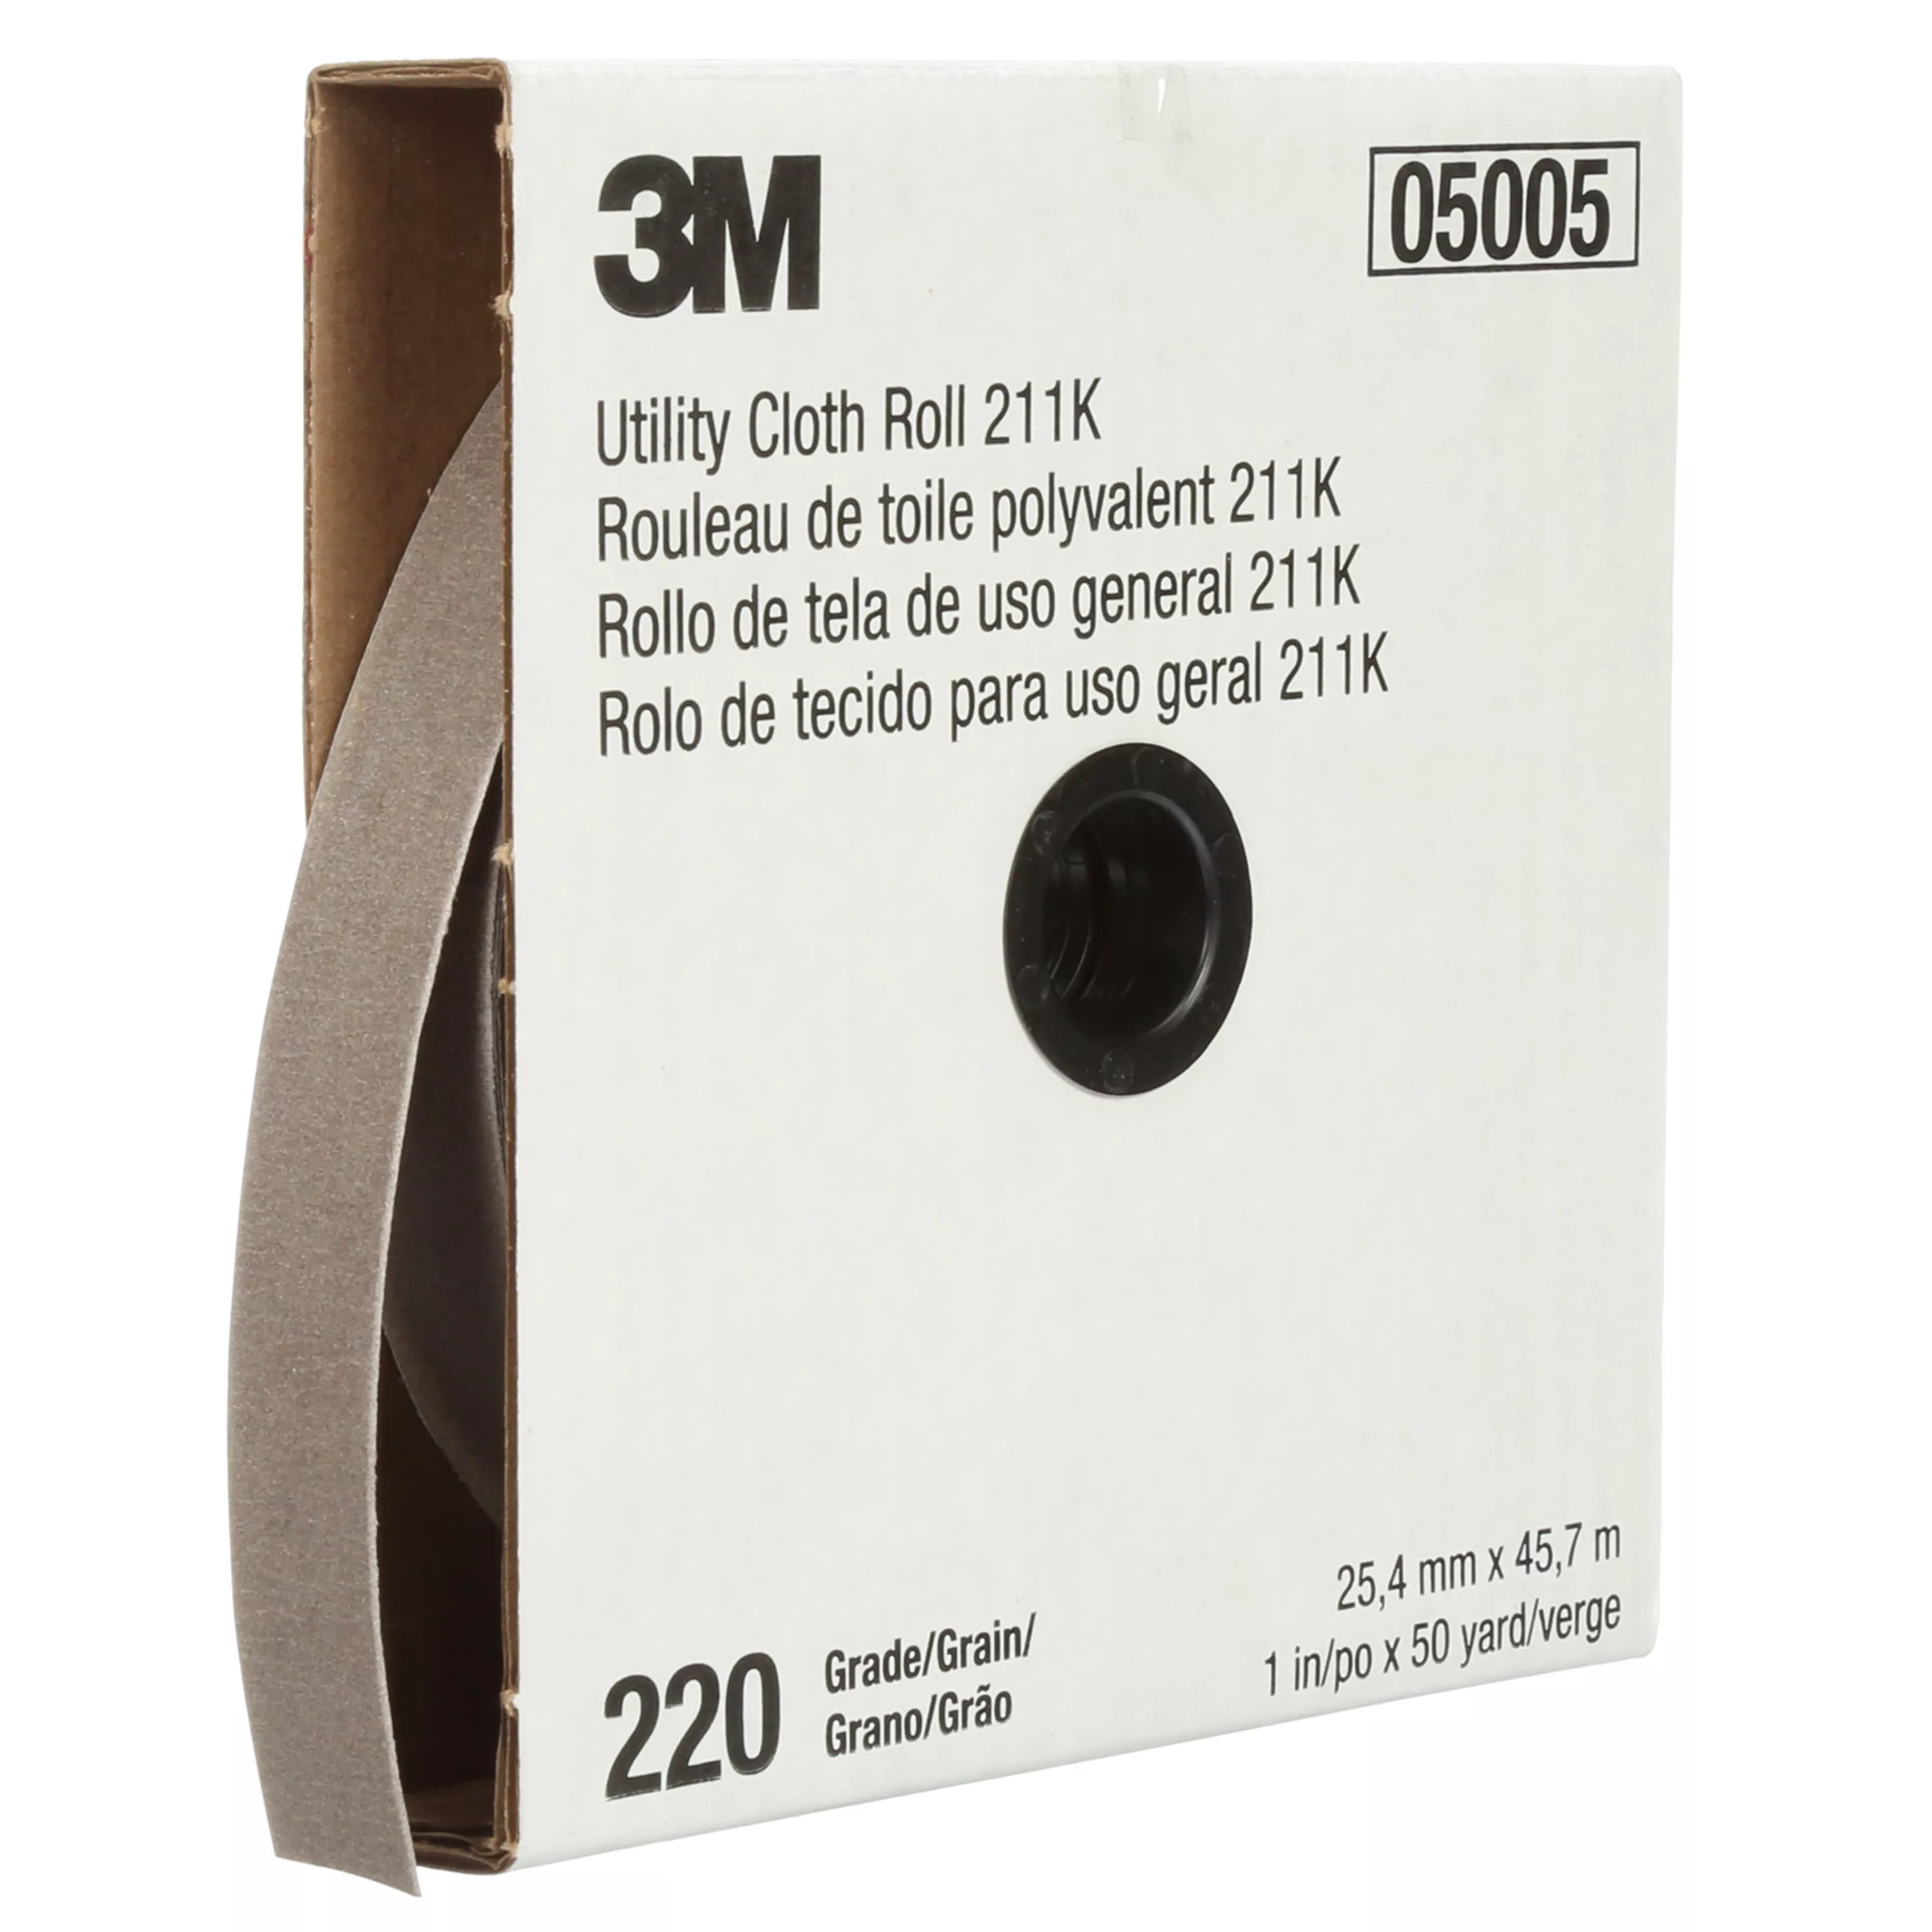 3M™ Utility Cloth Roll 211K, 220 J-weight, 1 in x 50 yd, Full-flex, 5
ea/Case